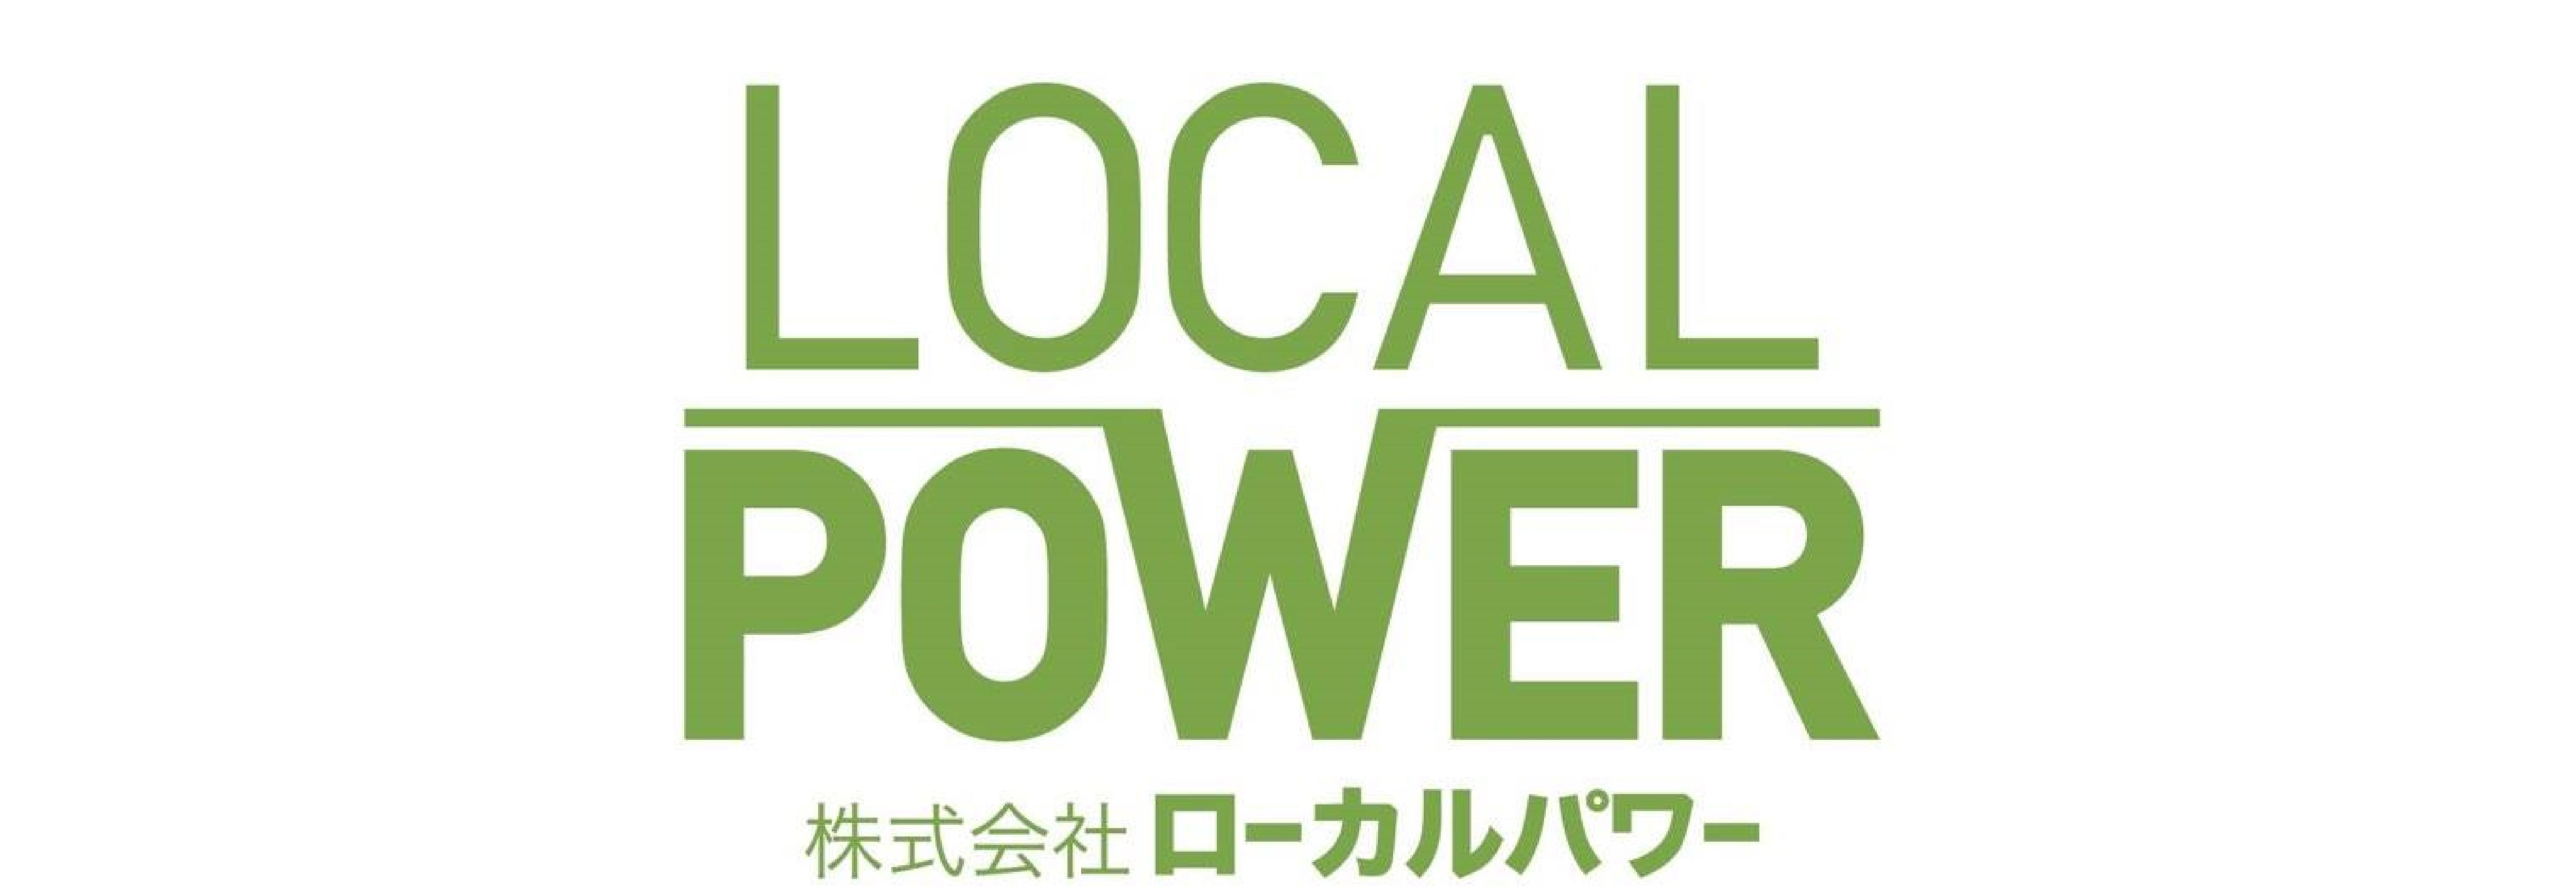 LocalPower